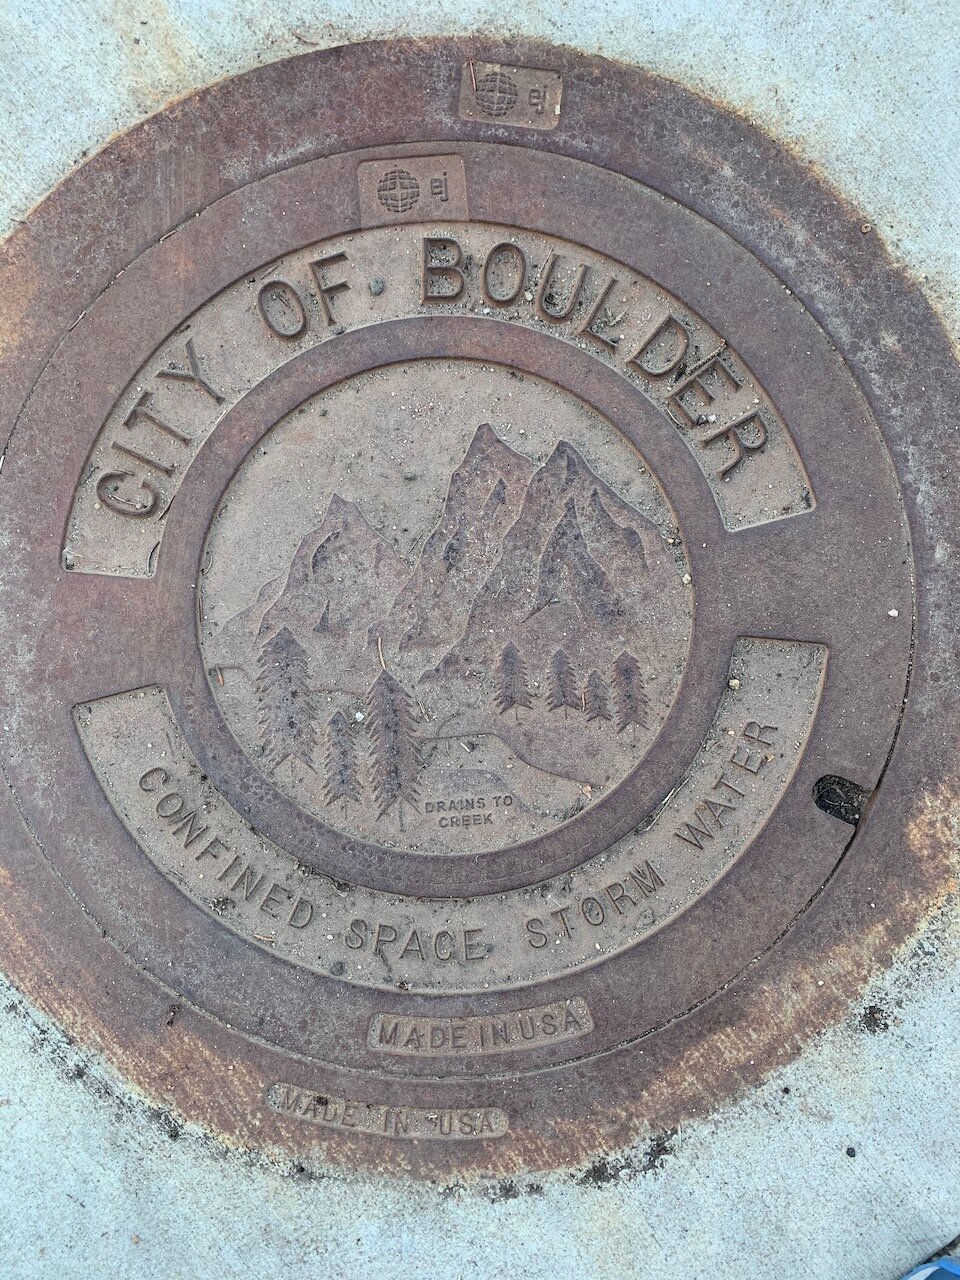    Boulder, Colorado, our current home.    